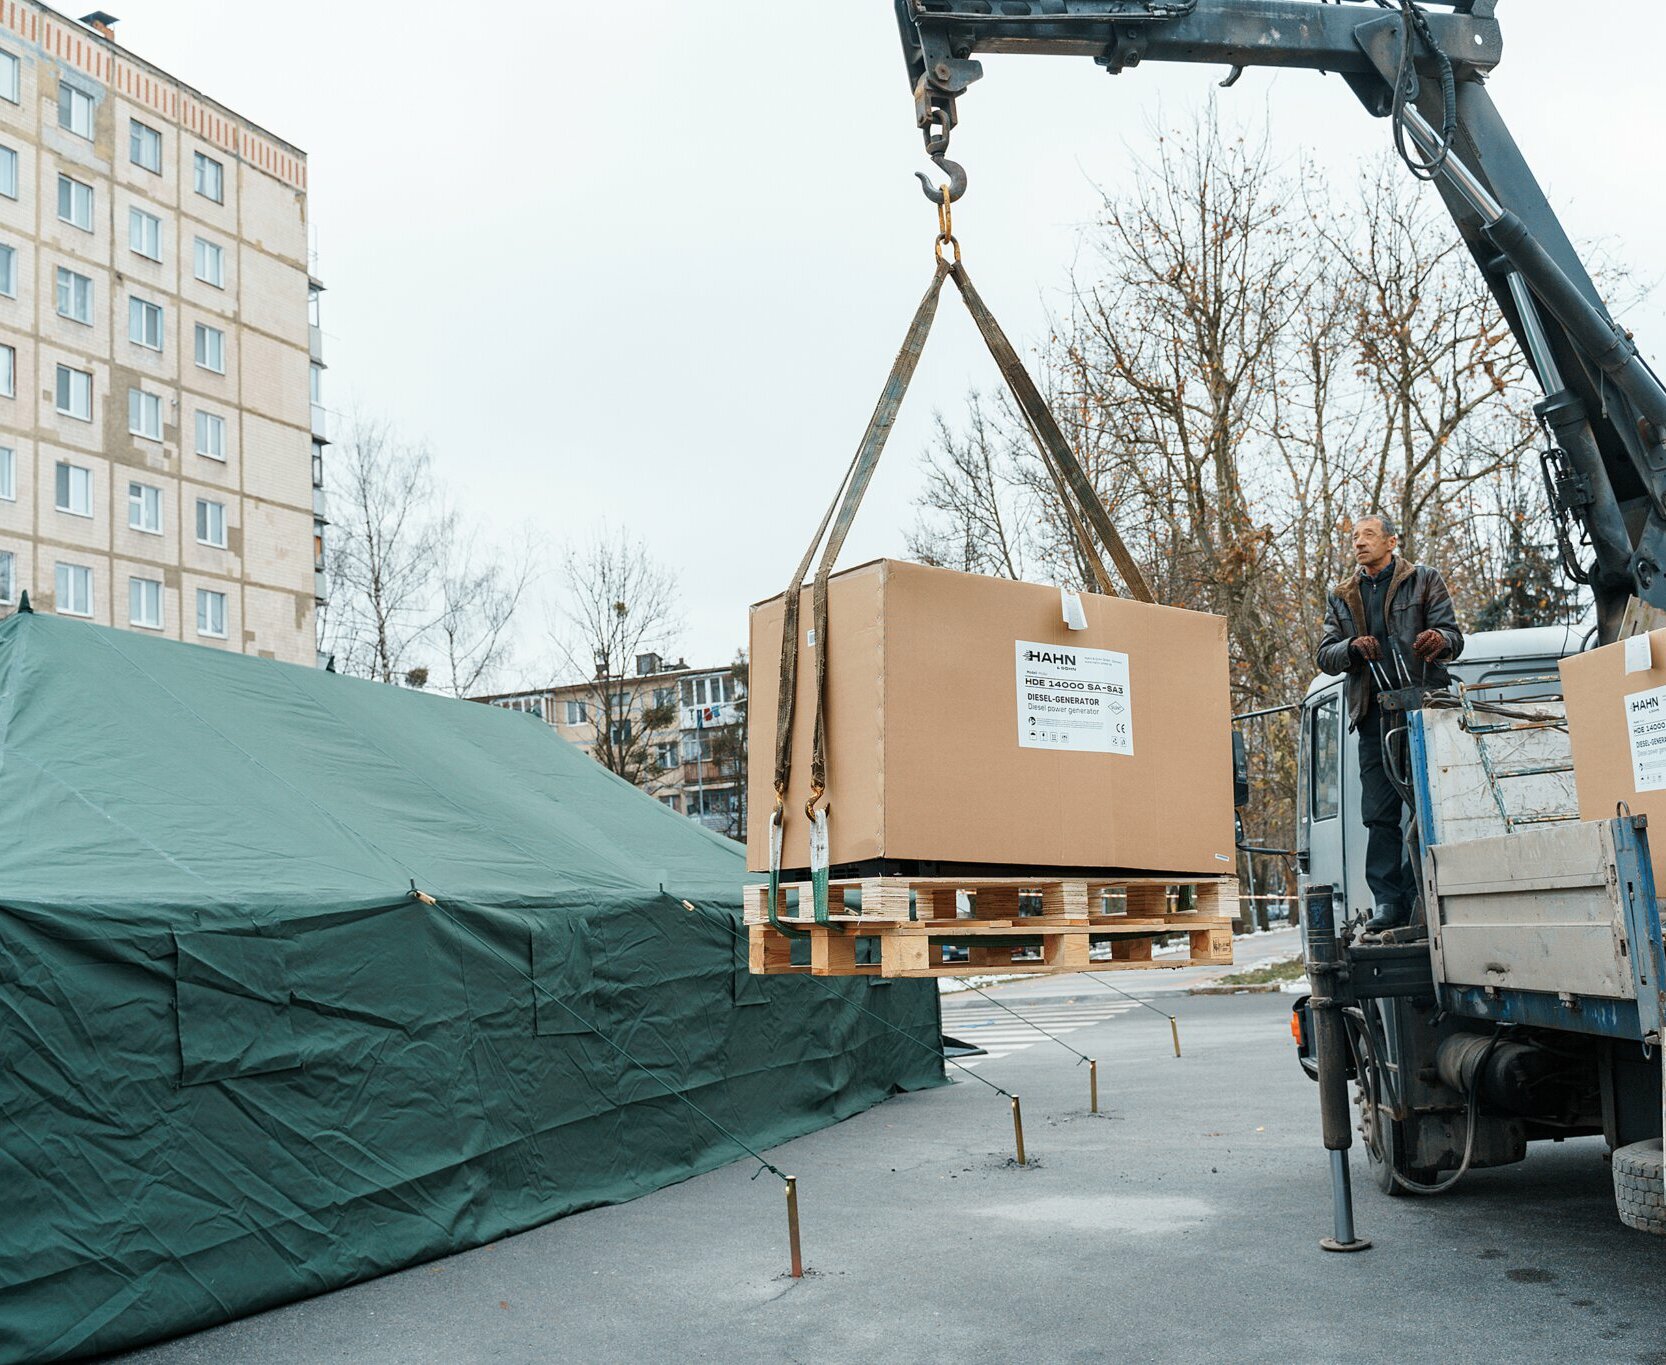 Im Rahmen von "Karlsruhe hilft" wurden zehn Wärmestationen in die zukünftige ukrainische Partnerstadt Winnyzja geliefert und vor Ort aufgebaut, um den Menschen Schutz vor der Kälte zu bieten. 